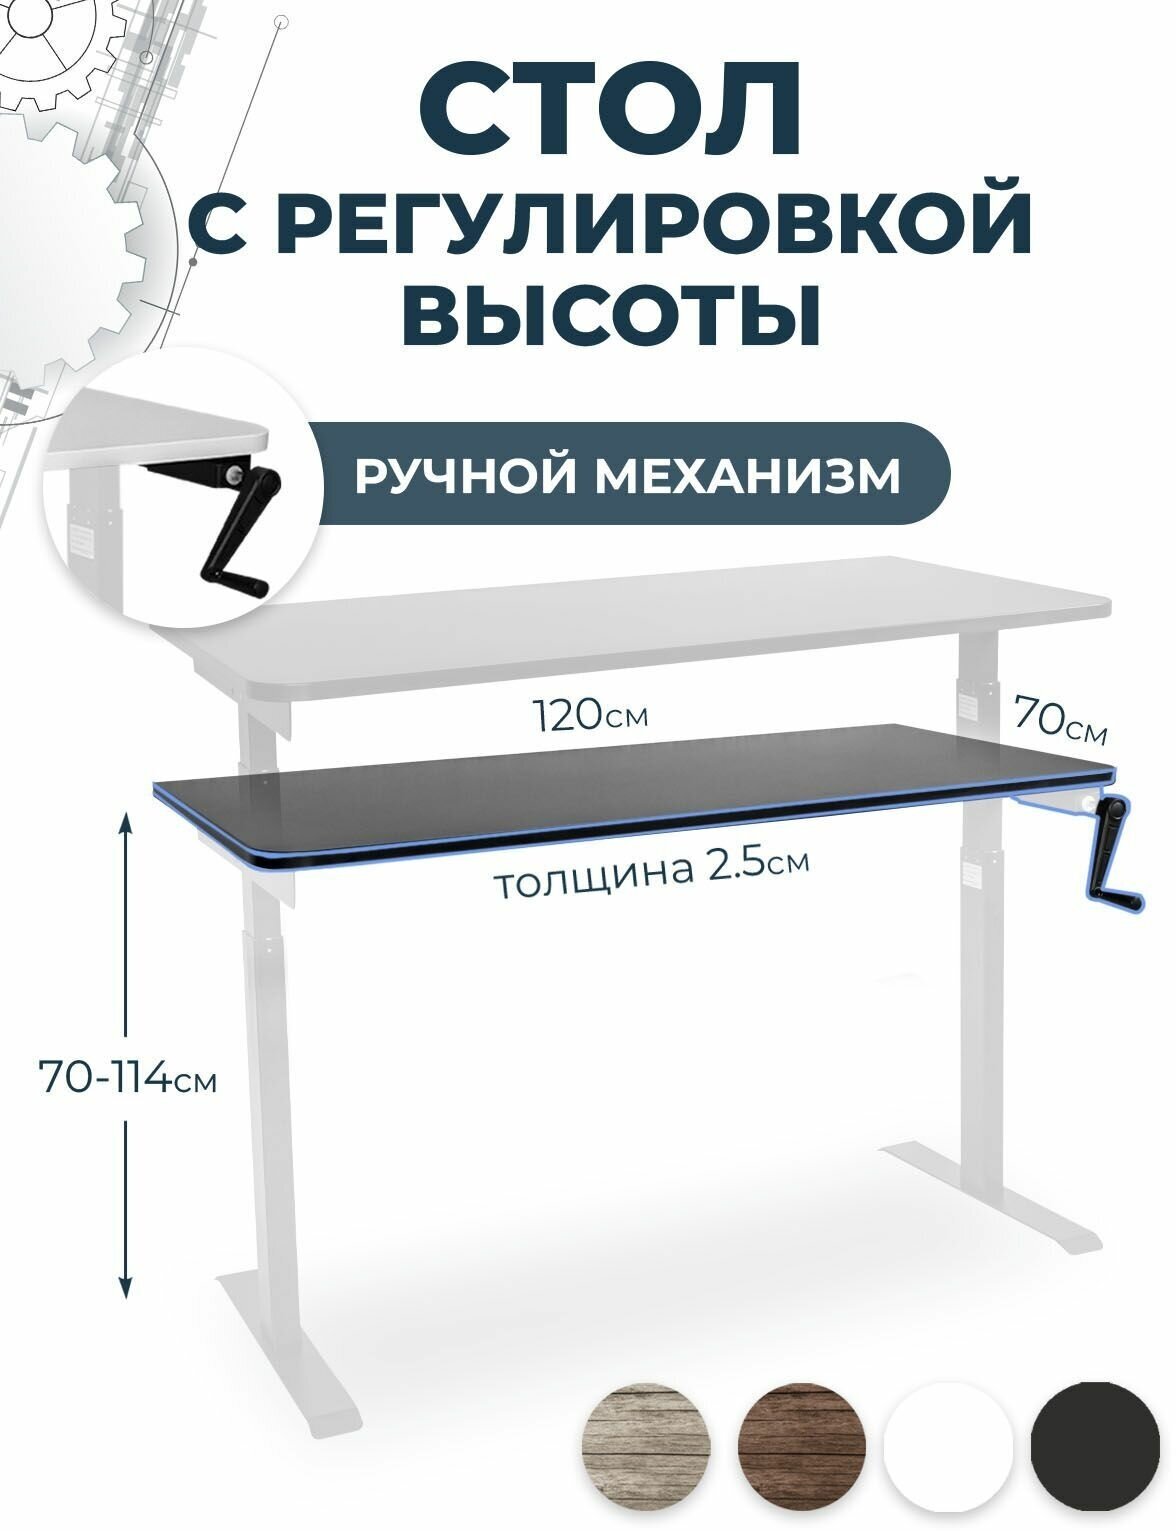 Стол c регулировкой высоты PROtect, черная столешница ЛДСП 120x70x2,5 см, белое подстолье М1